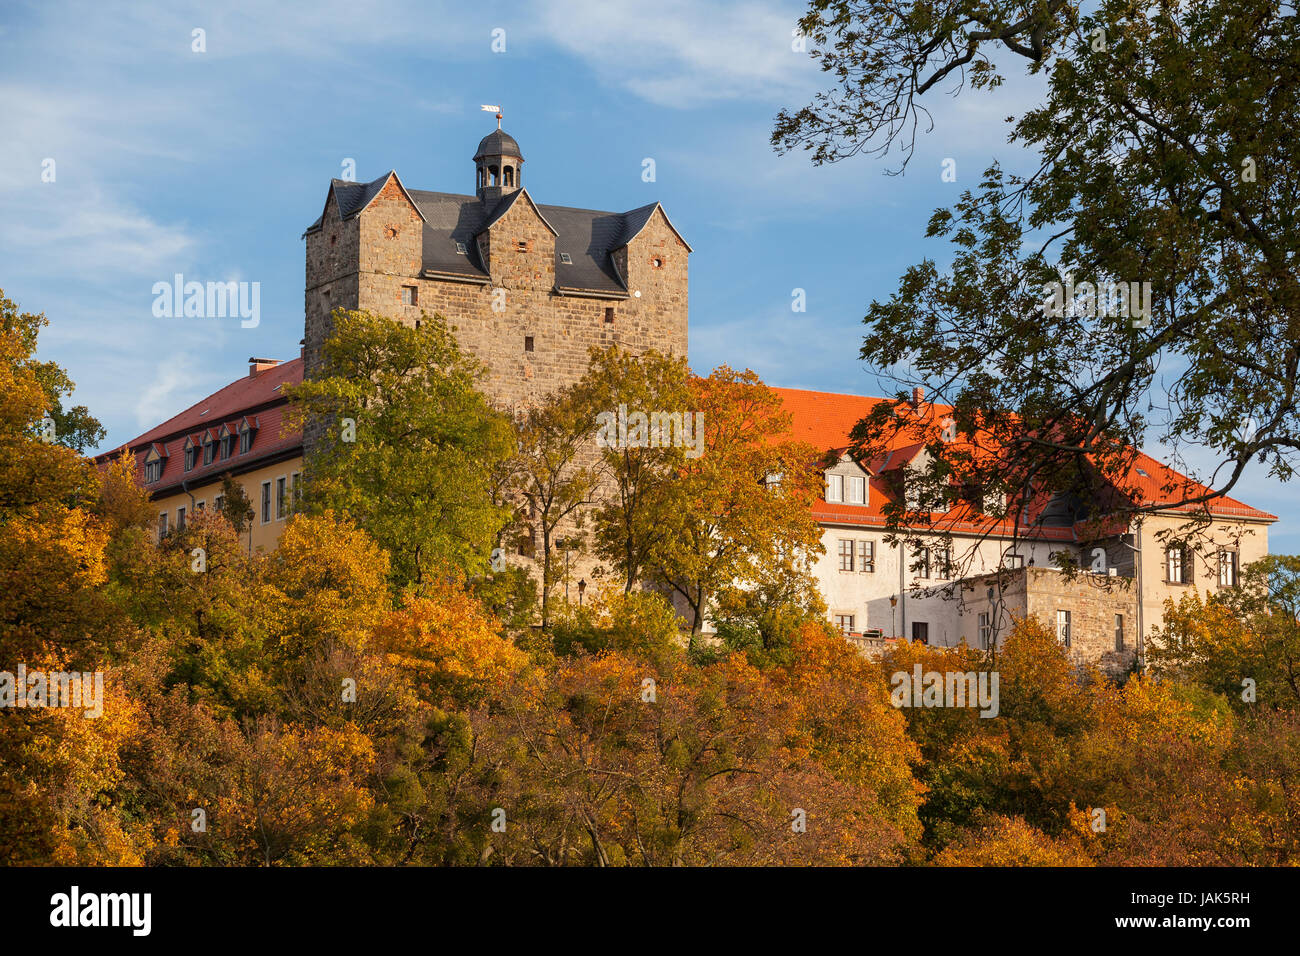 Schlosspark mit dem Schloss Ballenstedt im Herbst Foto Stock